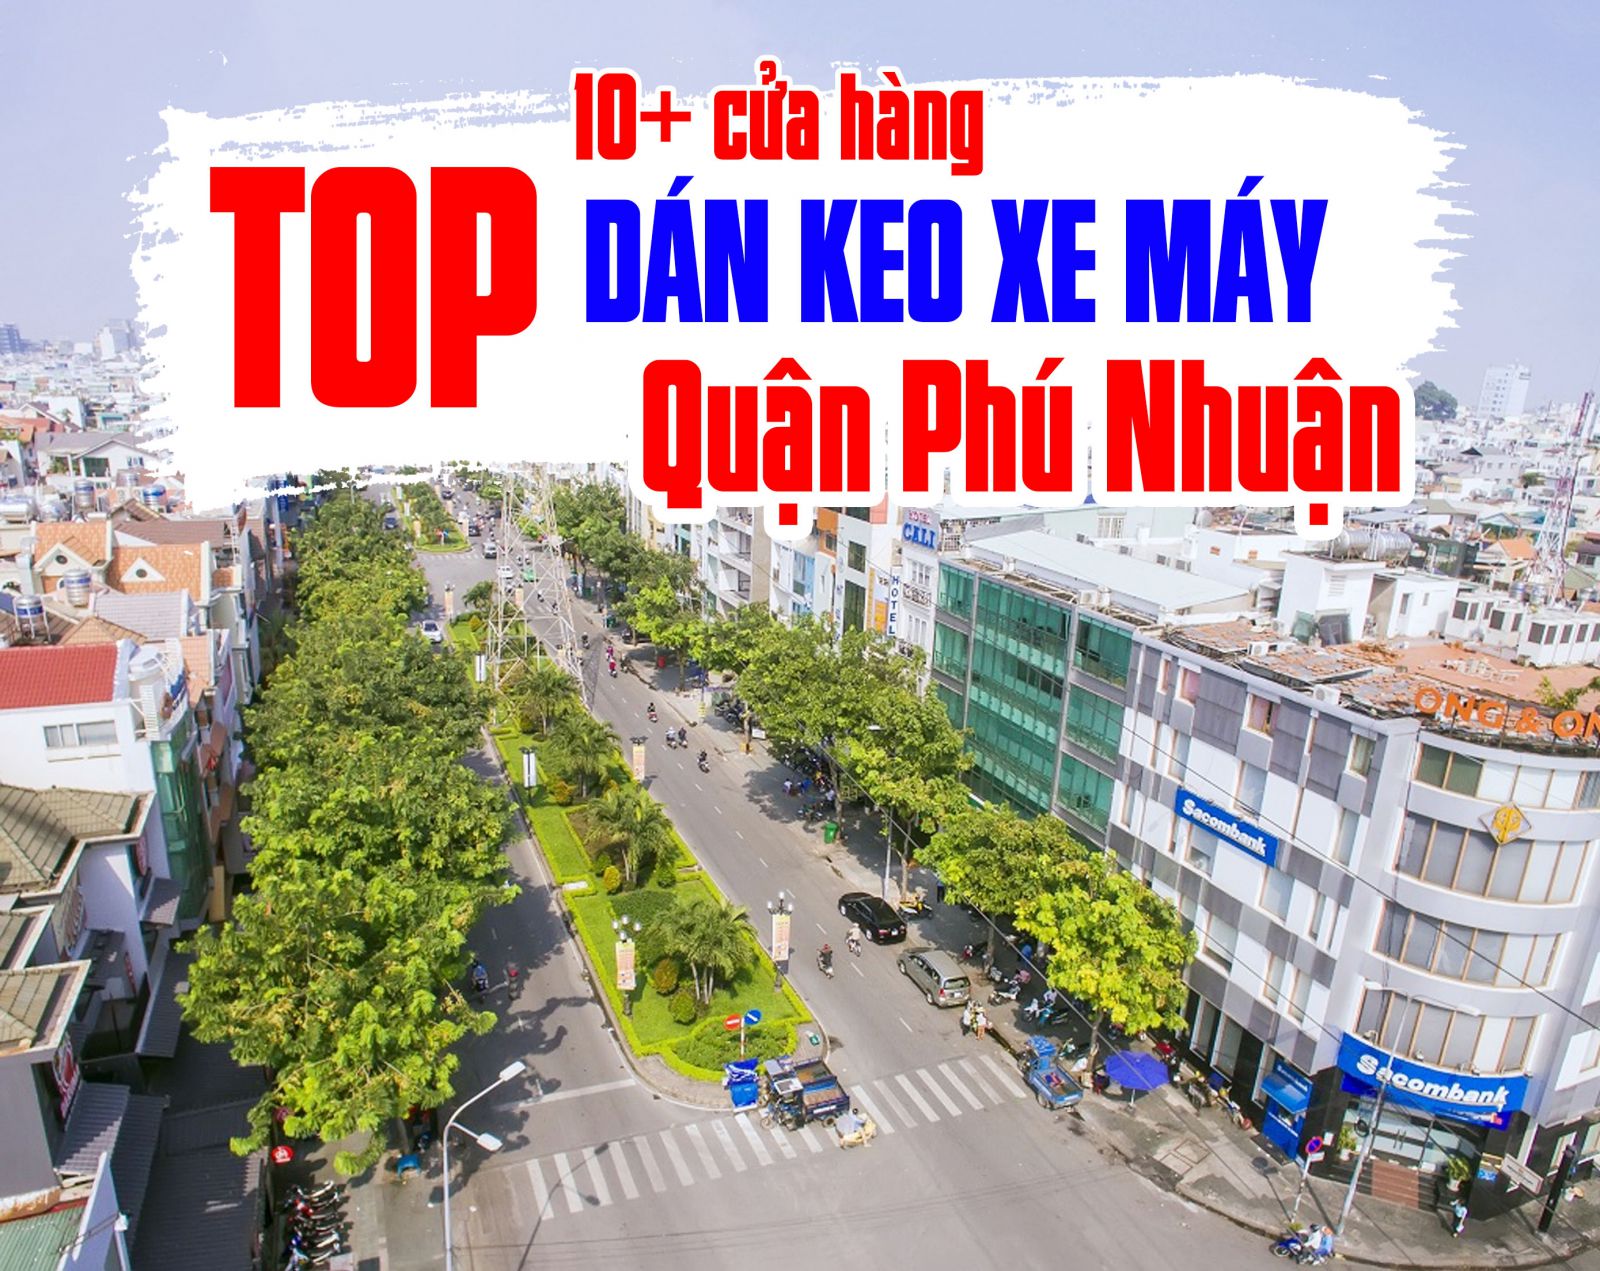 [TOP] 10+ tiệm dán decal xe máy tại quận Phú Nhuận uy tín, chất lượng 2023